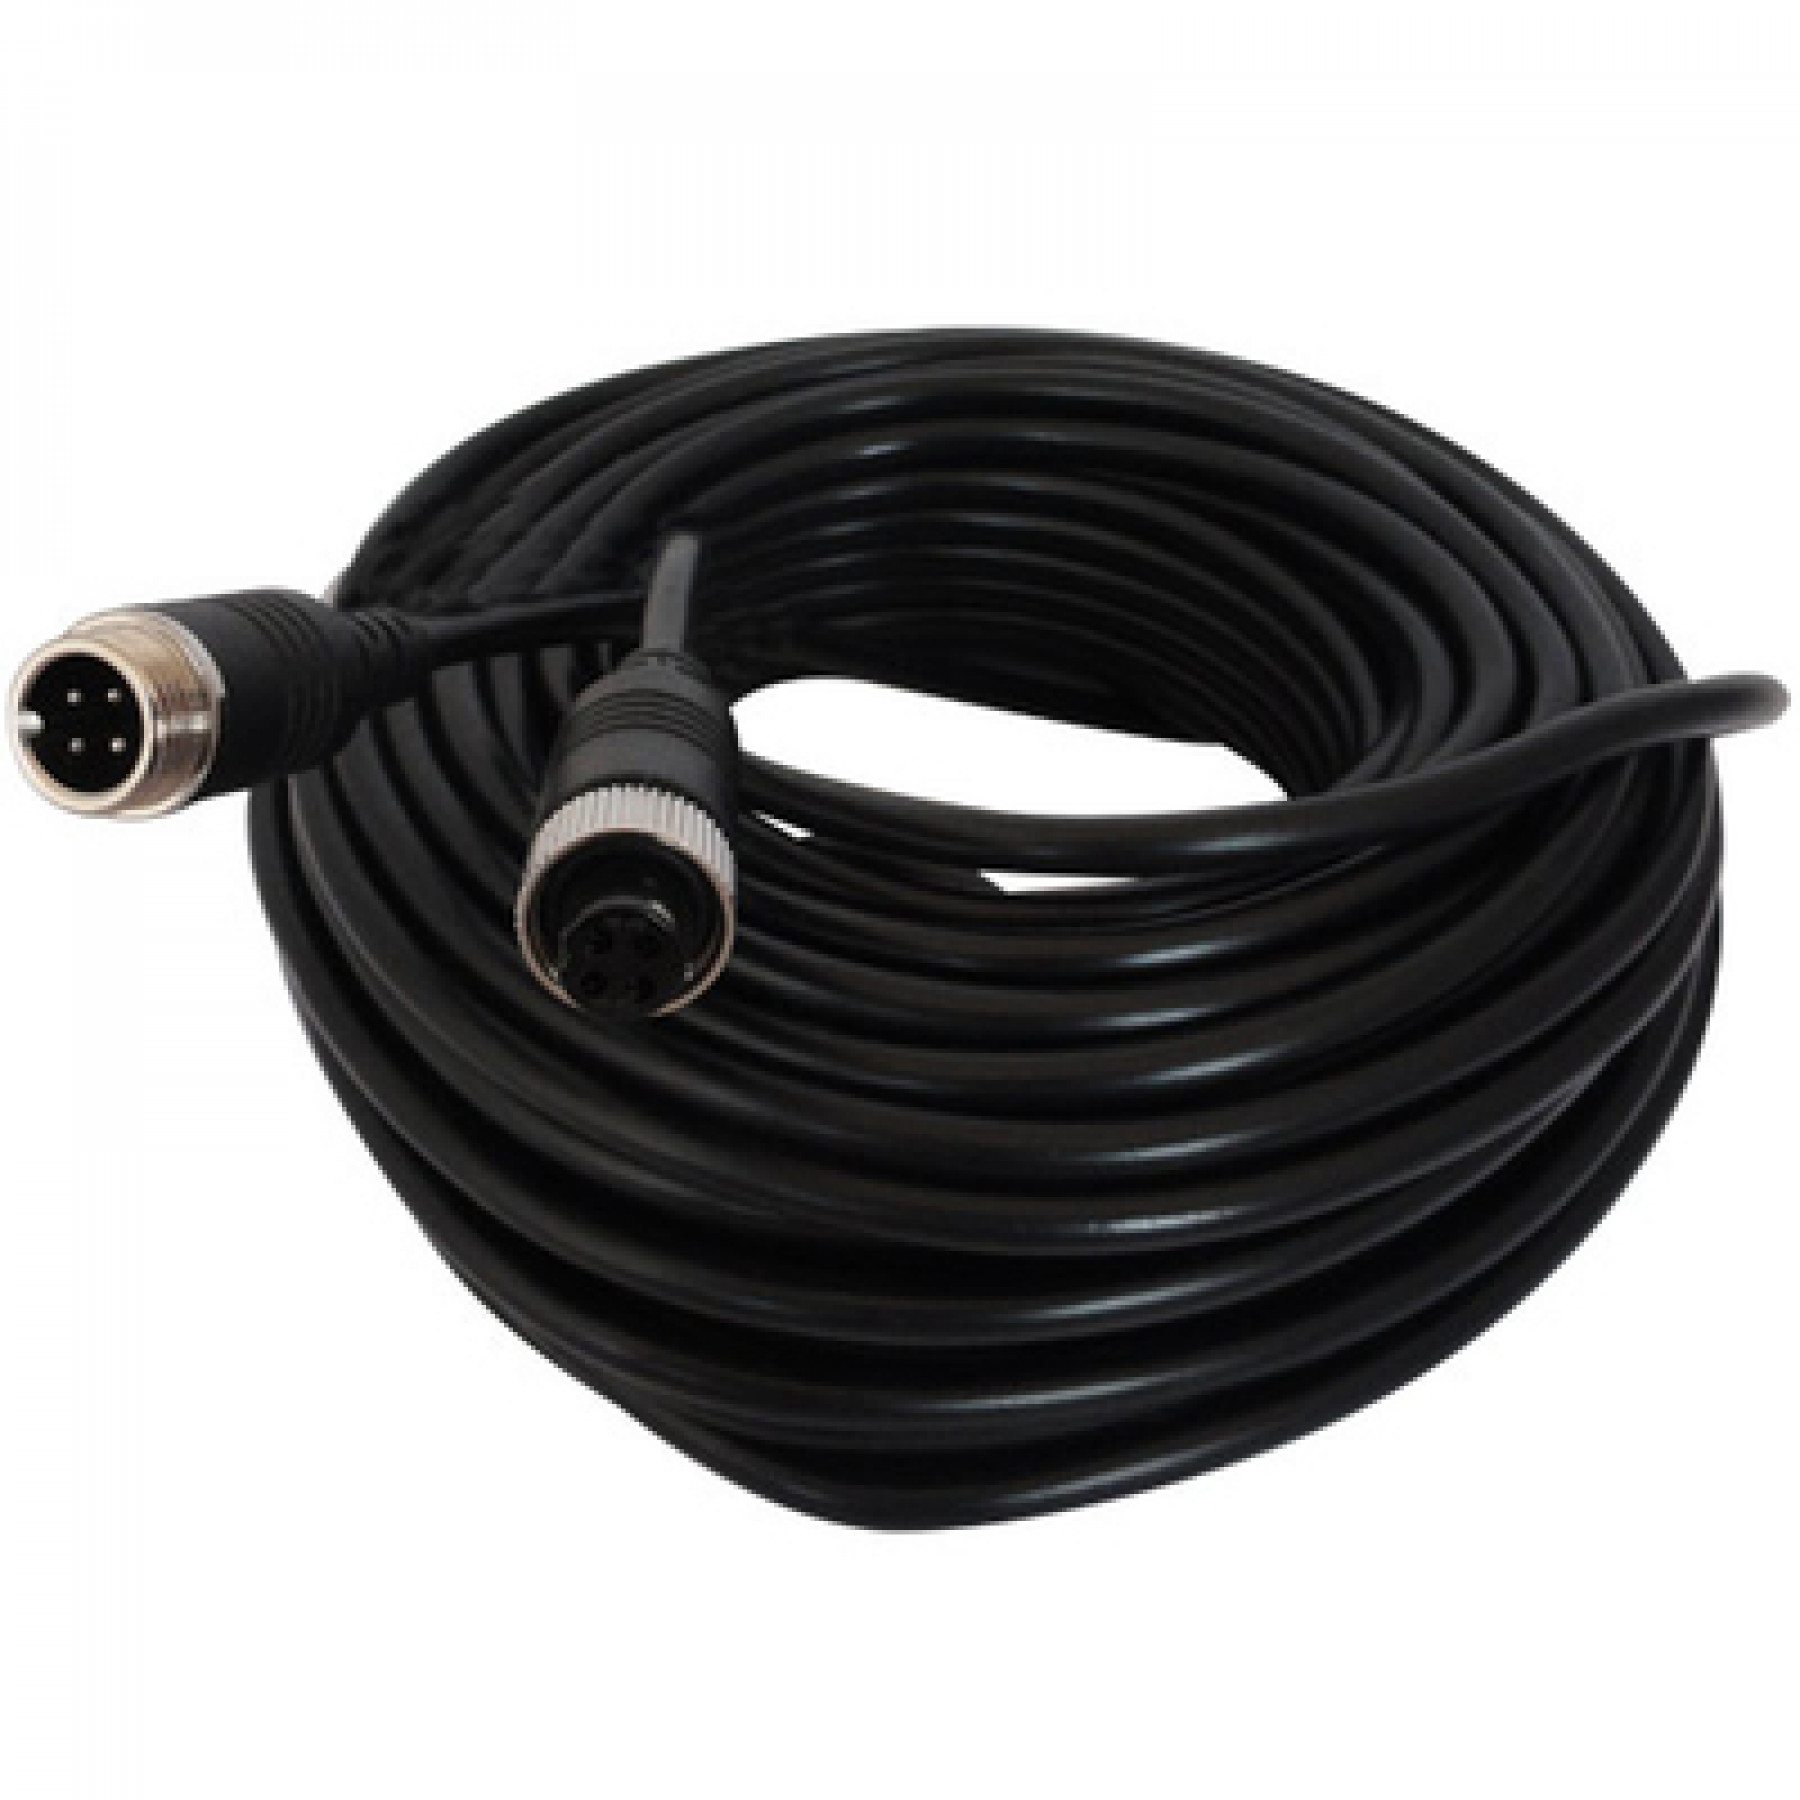 Kabel 4-pin Sparex / Brigade 10 meter